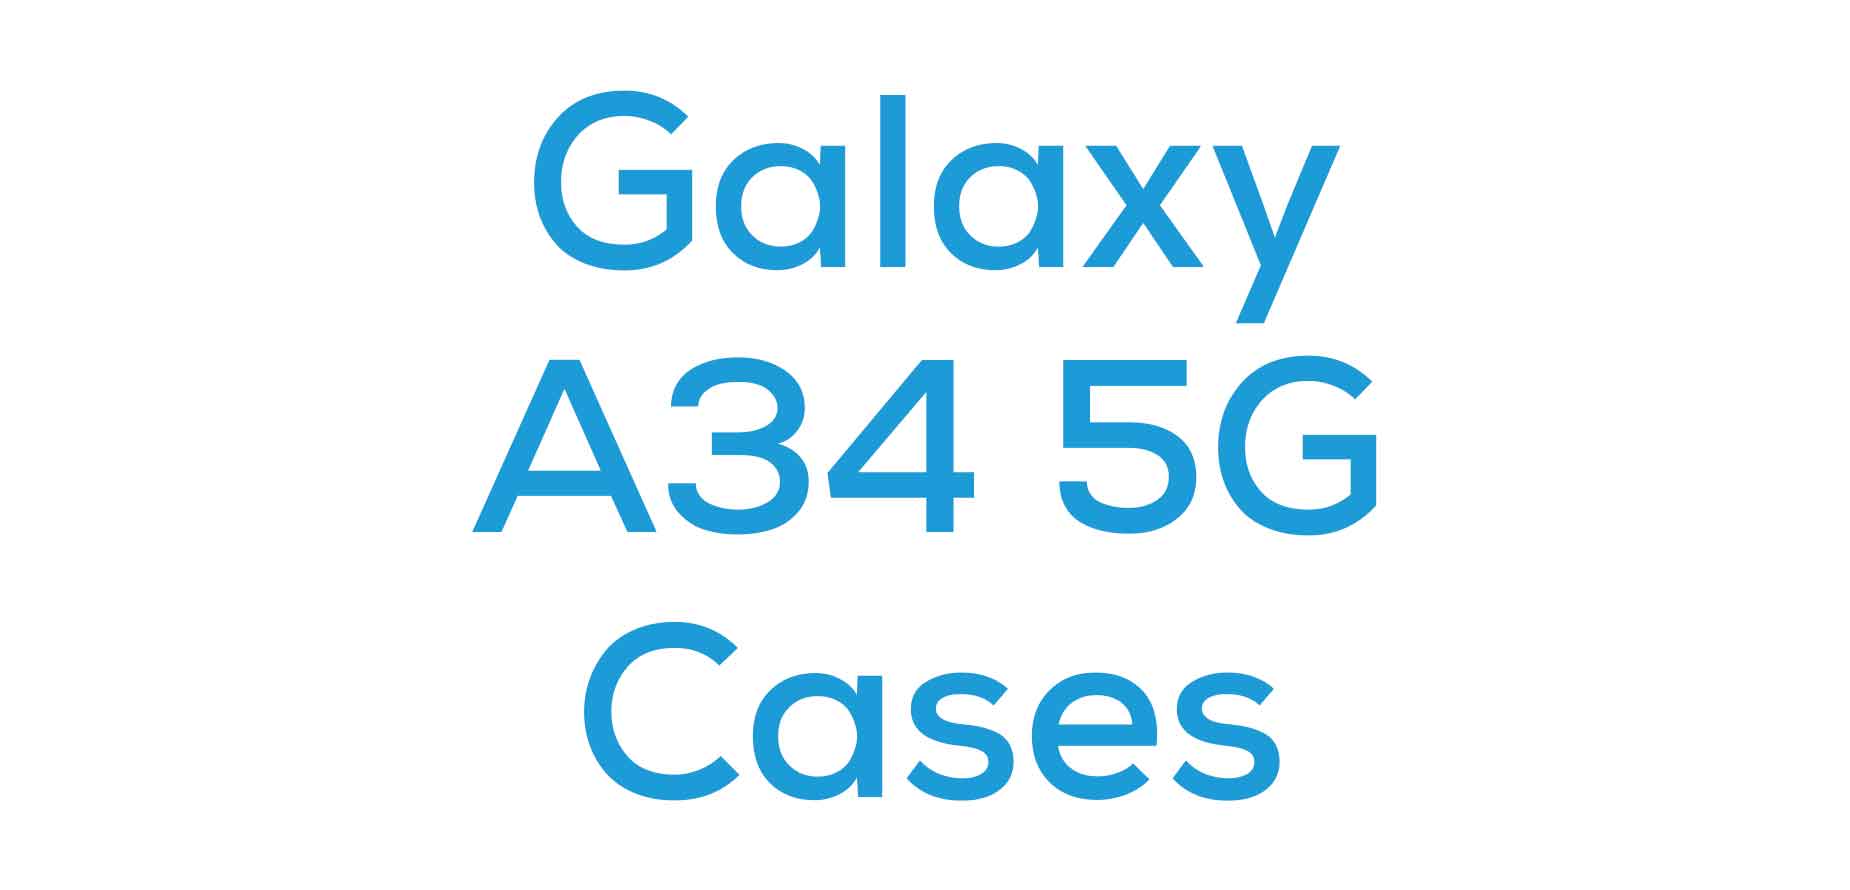 Galaxy A34 5G Cases